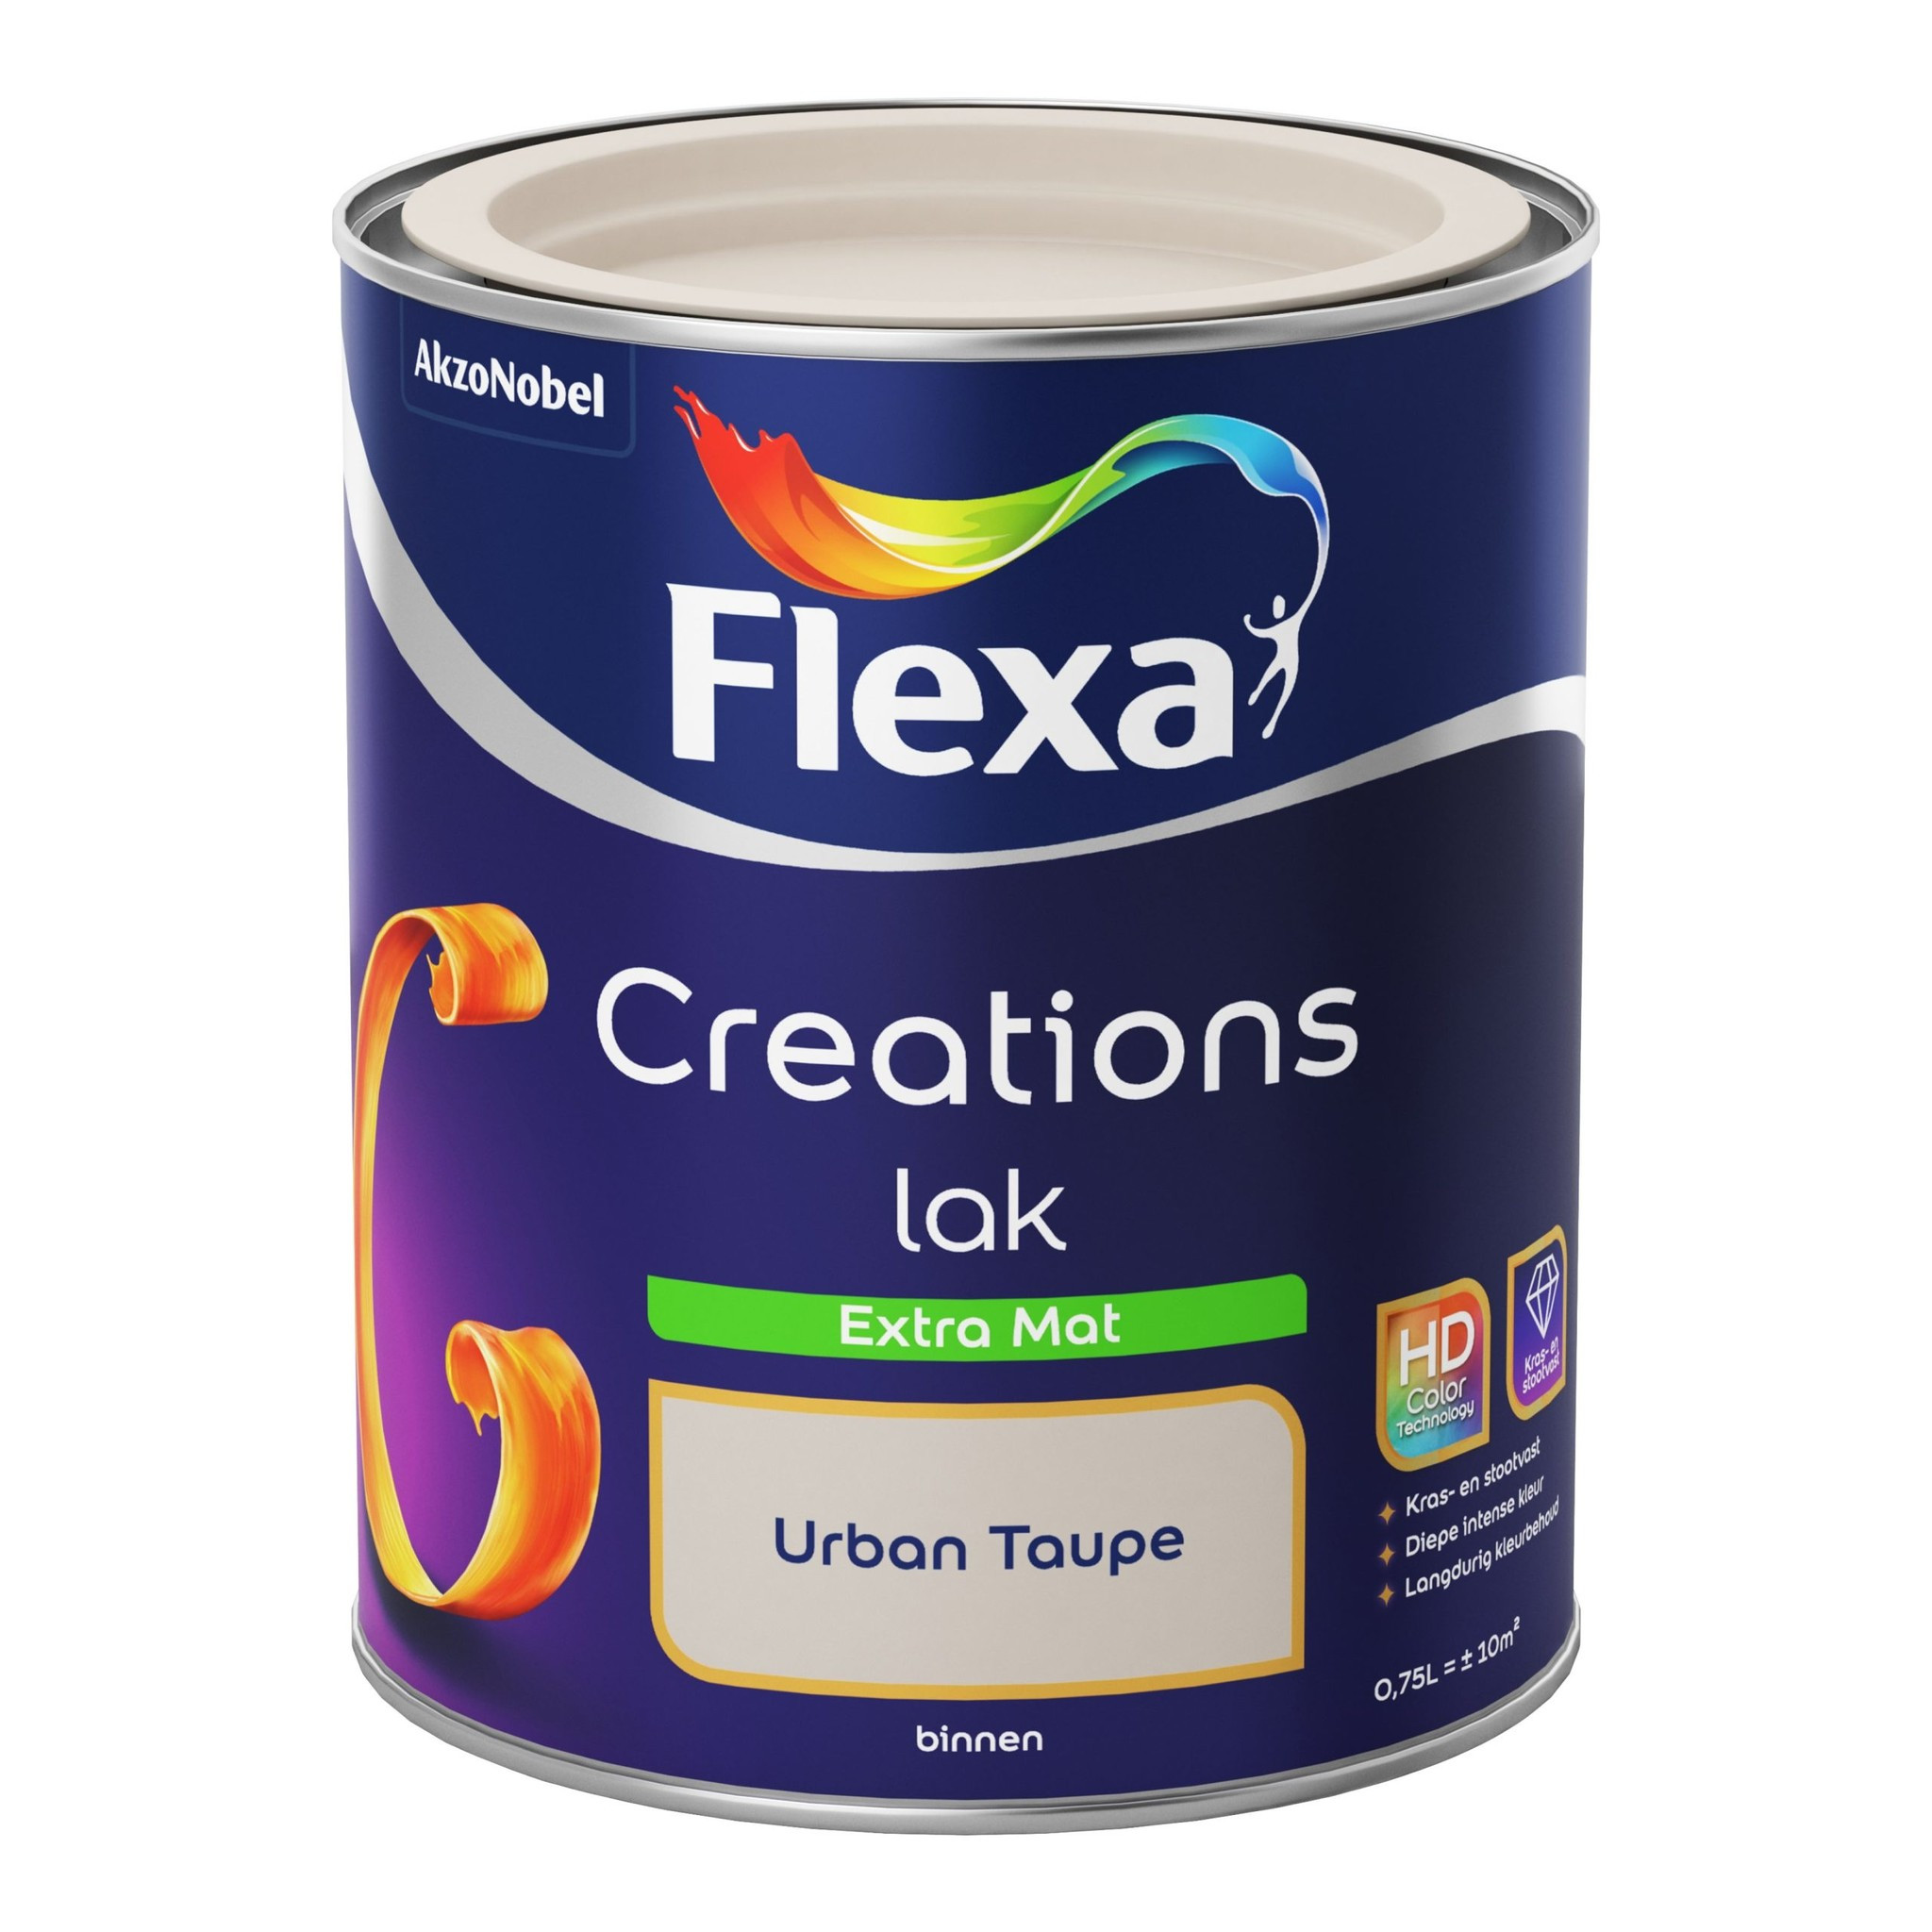 Flexa Creations Lak Extra Mat - Urban Taupe